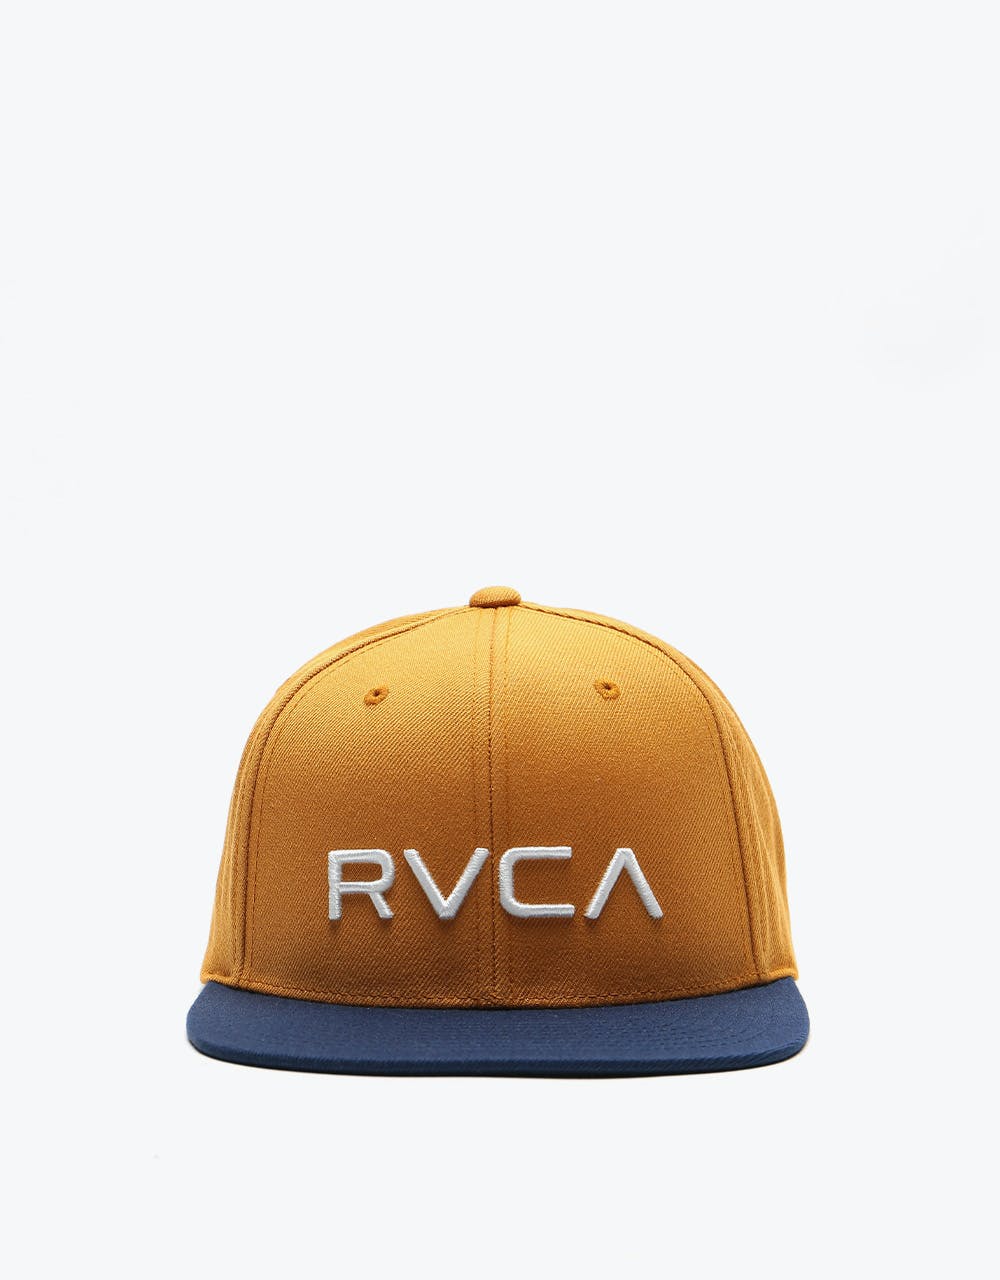 RVCA  Twill II Snapback Cap - Tan/Navy